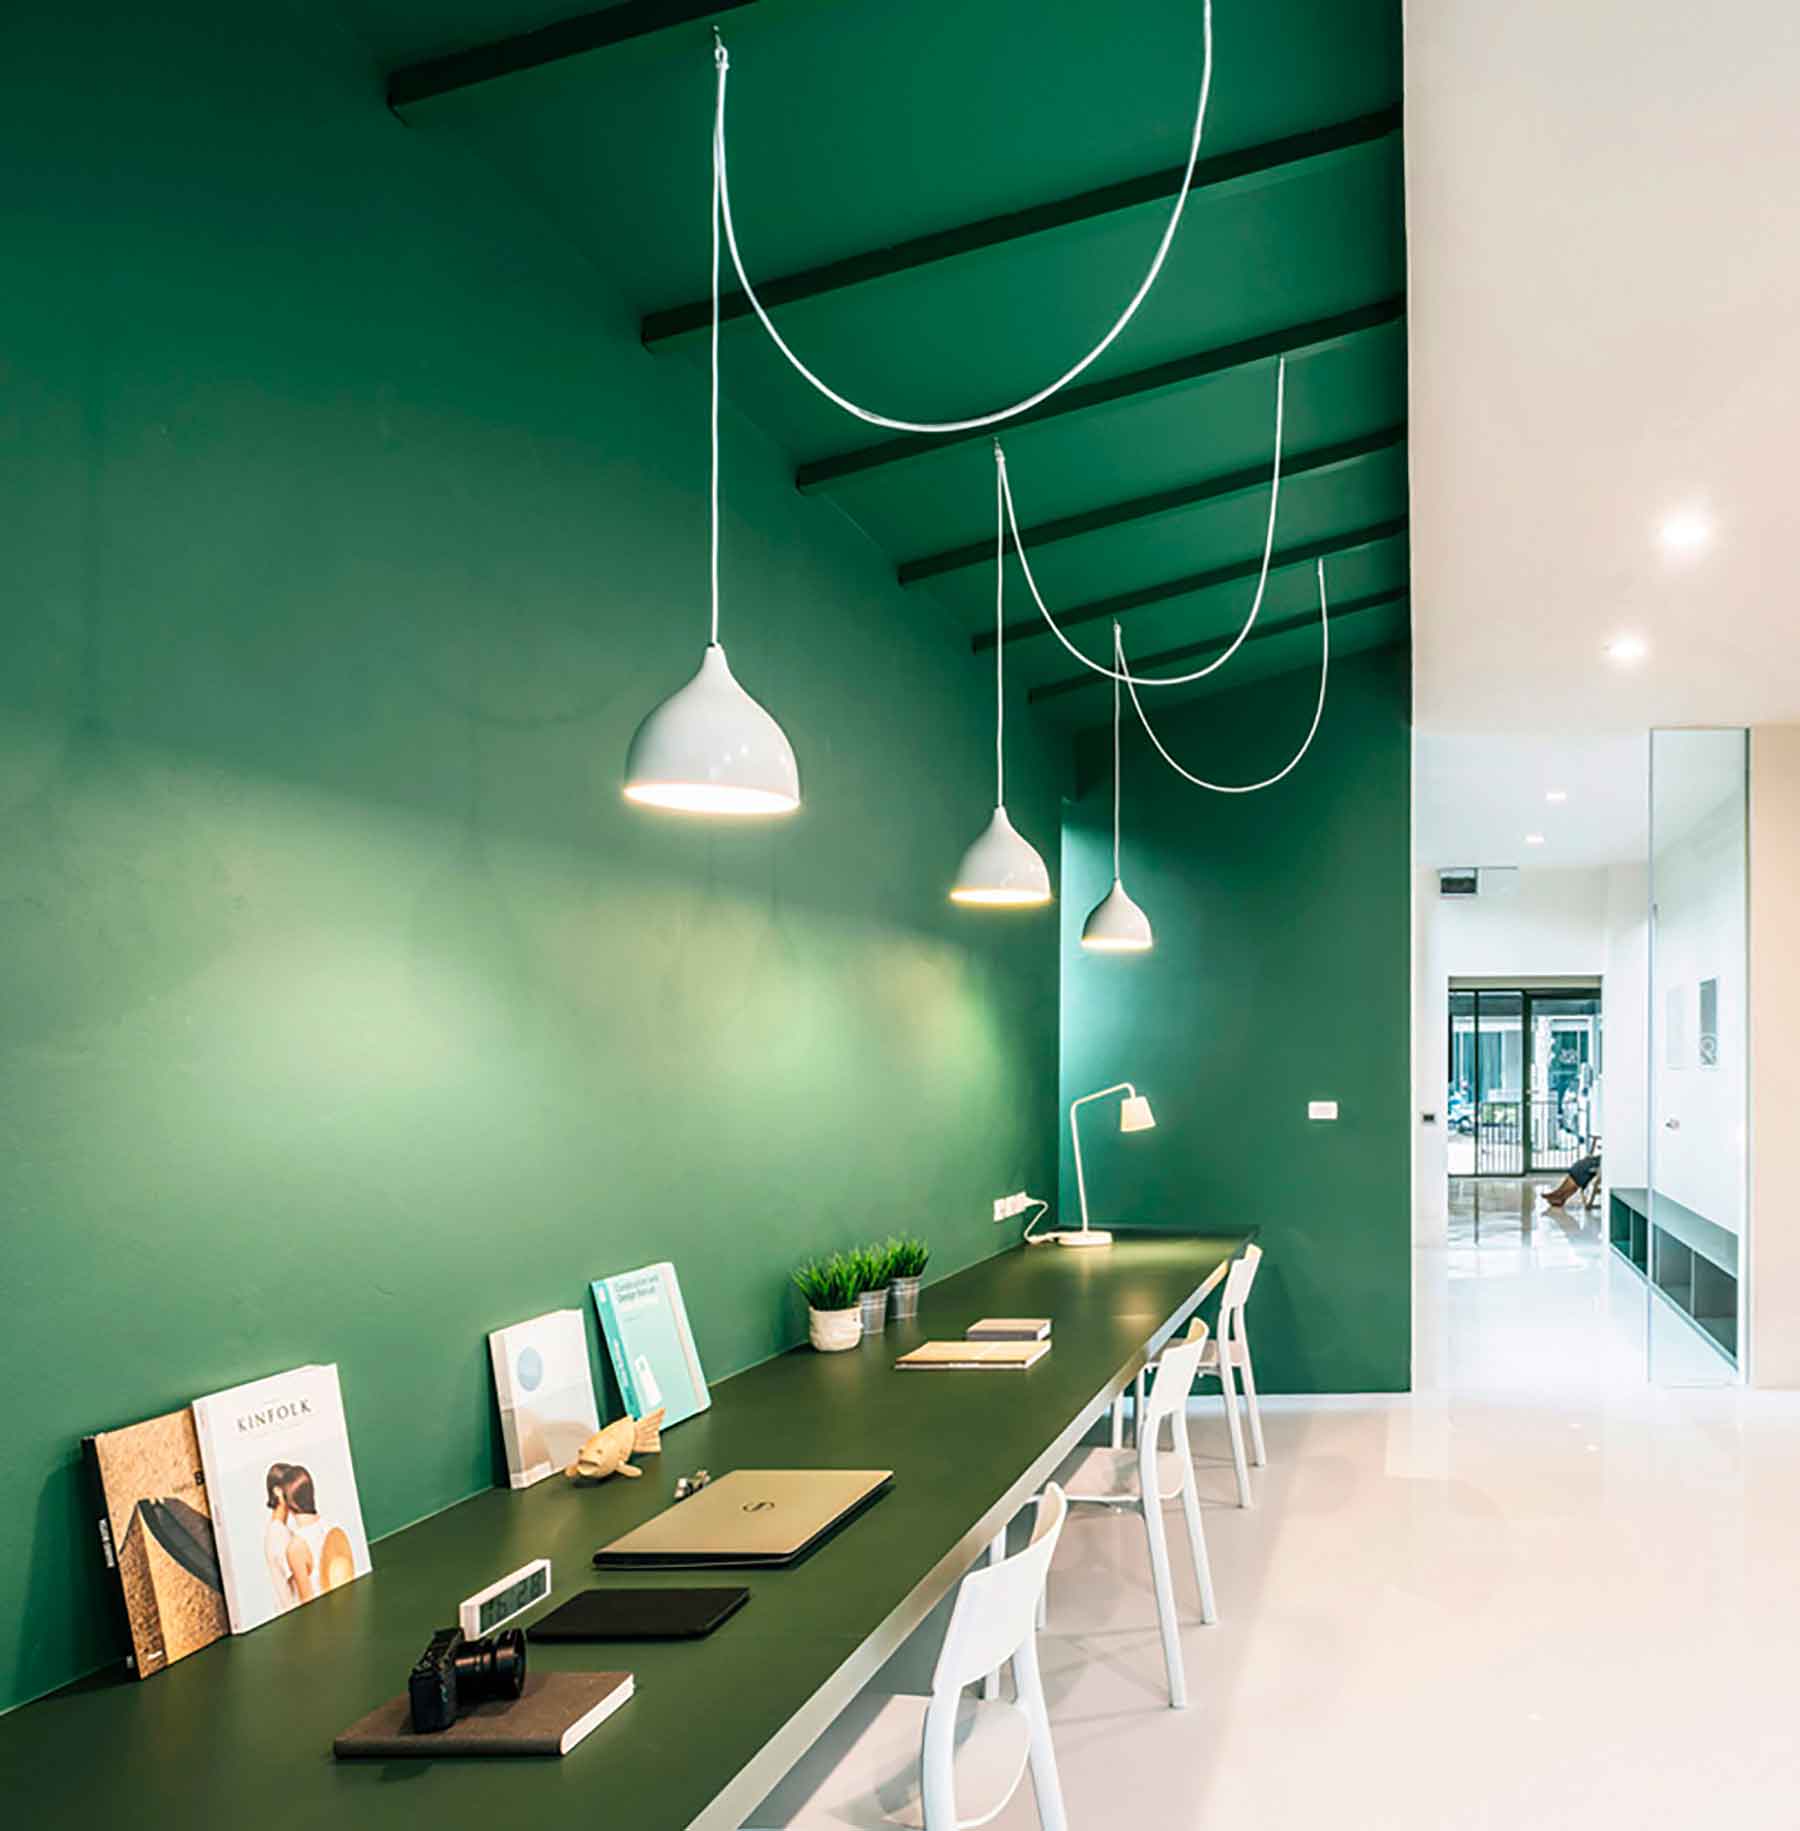 Oficinas en color verde